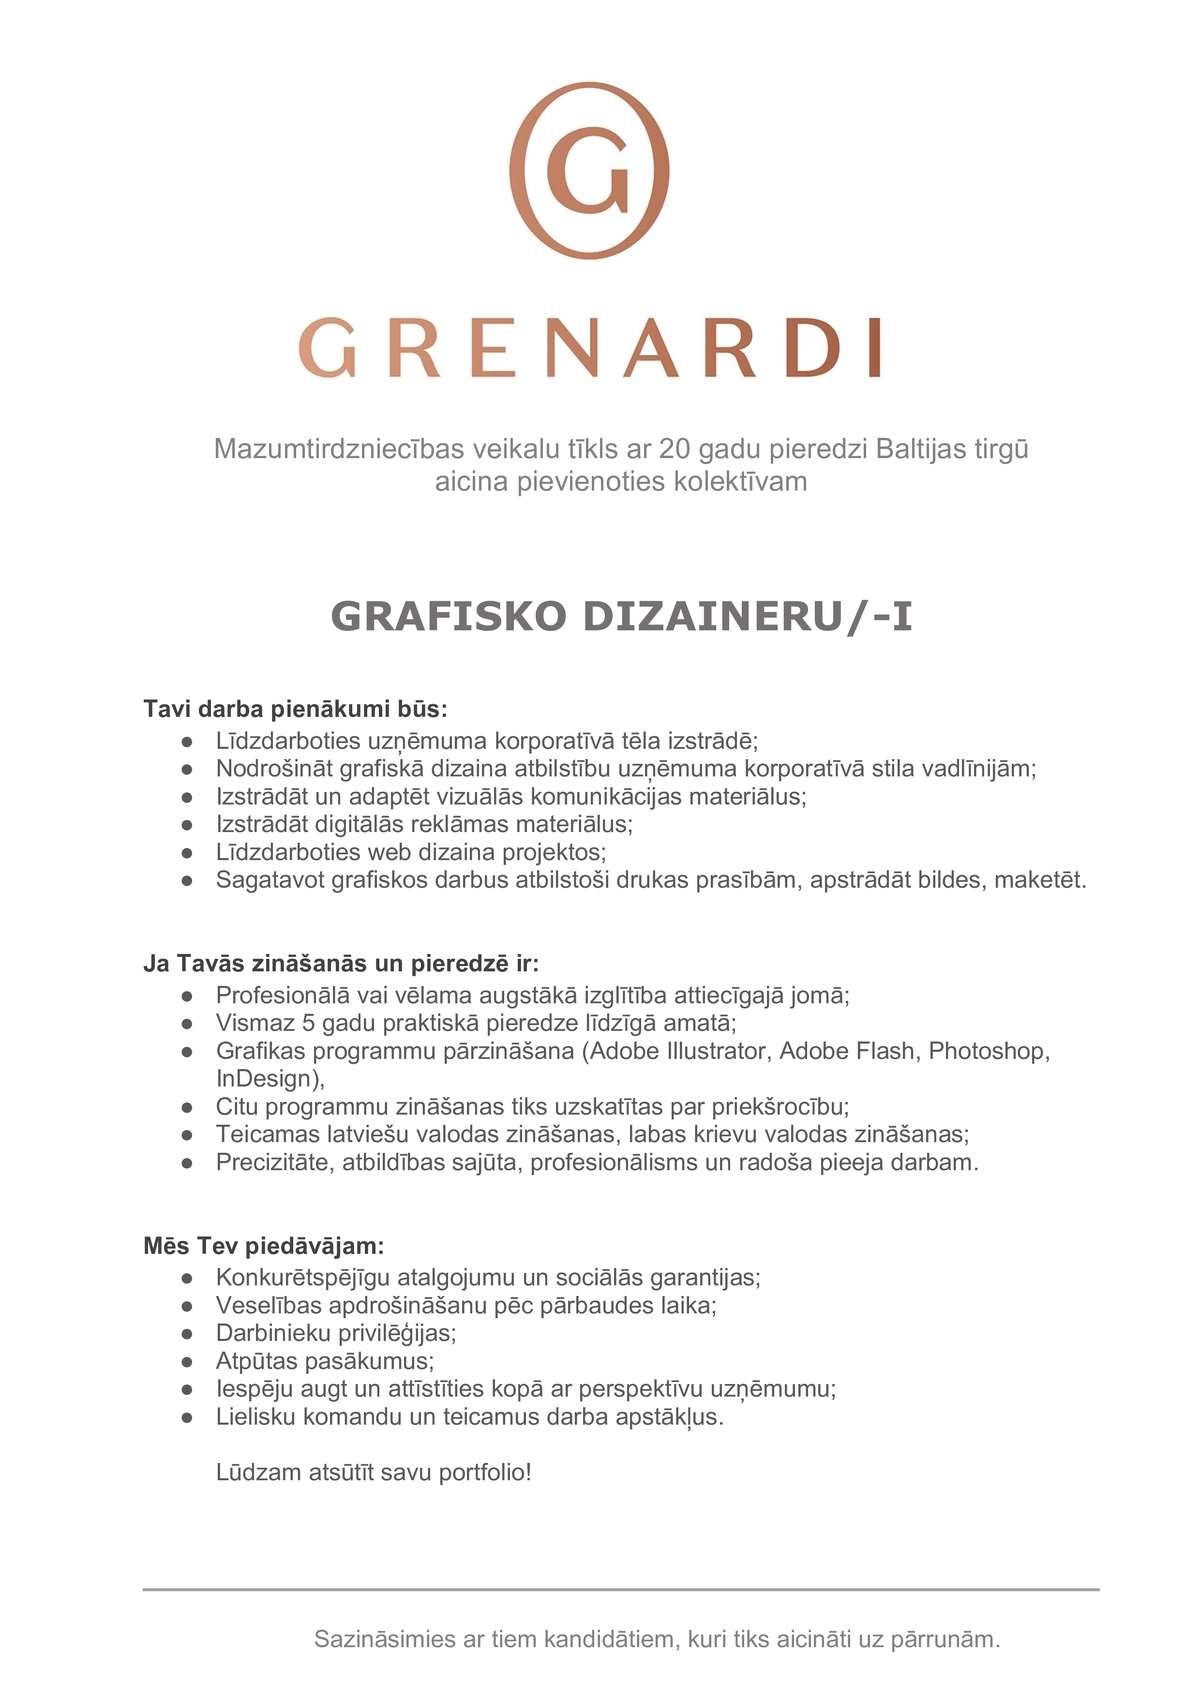 Grenardi, SIA Grafiskais dizainers/-e